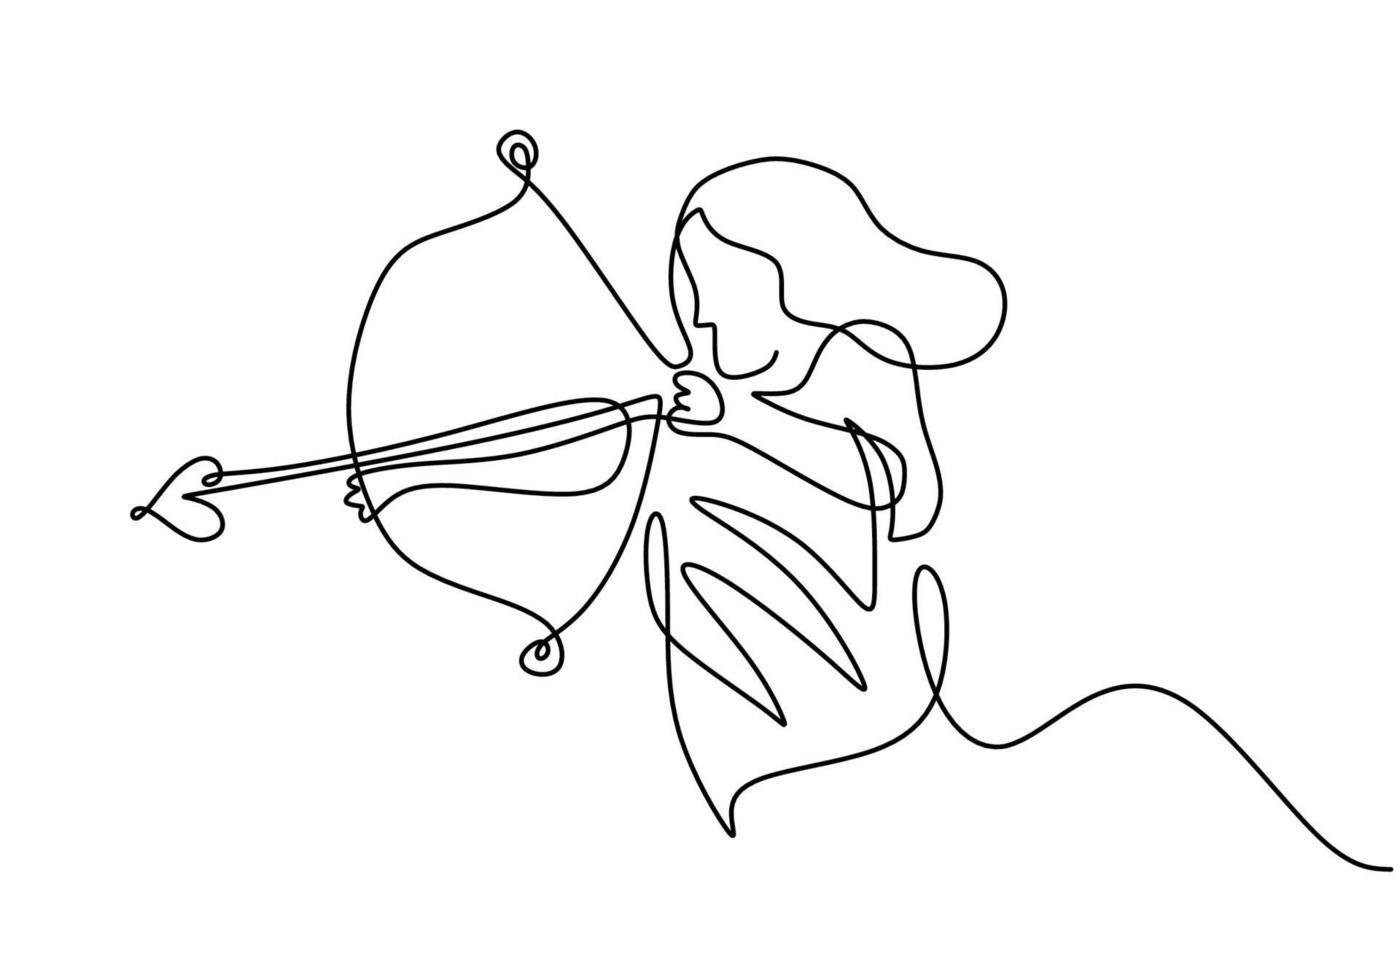 eine fortlaufende Strichzeichnung einer jungen energischen Bogenschützenfrau, die den Bogen zieht, um ein Bogenschießziel zu schießen. weiblicher Fokus des professionellen Bogenschützen, um Zielhand zu treffen, die mit minimalistischem Design gezeichnet wird vektor